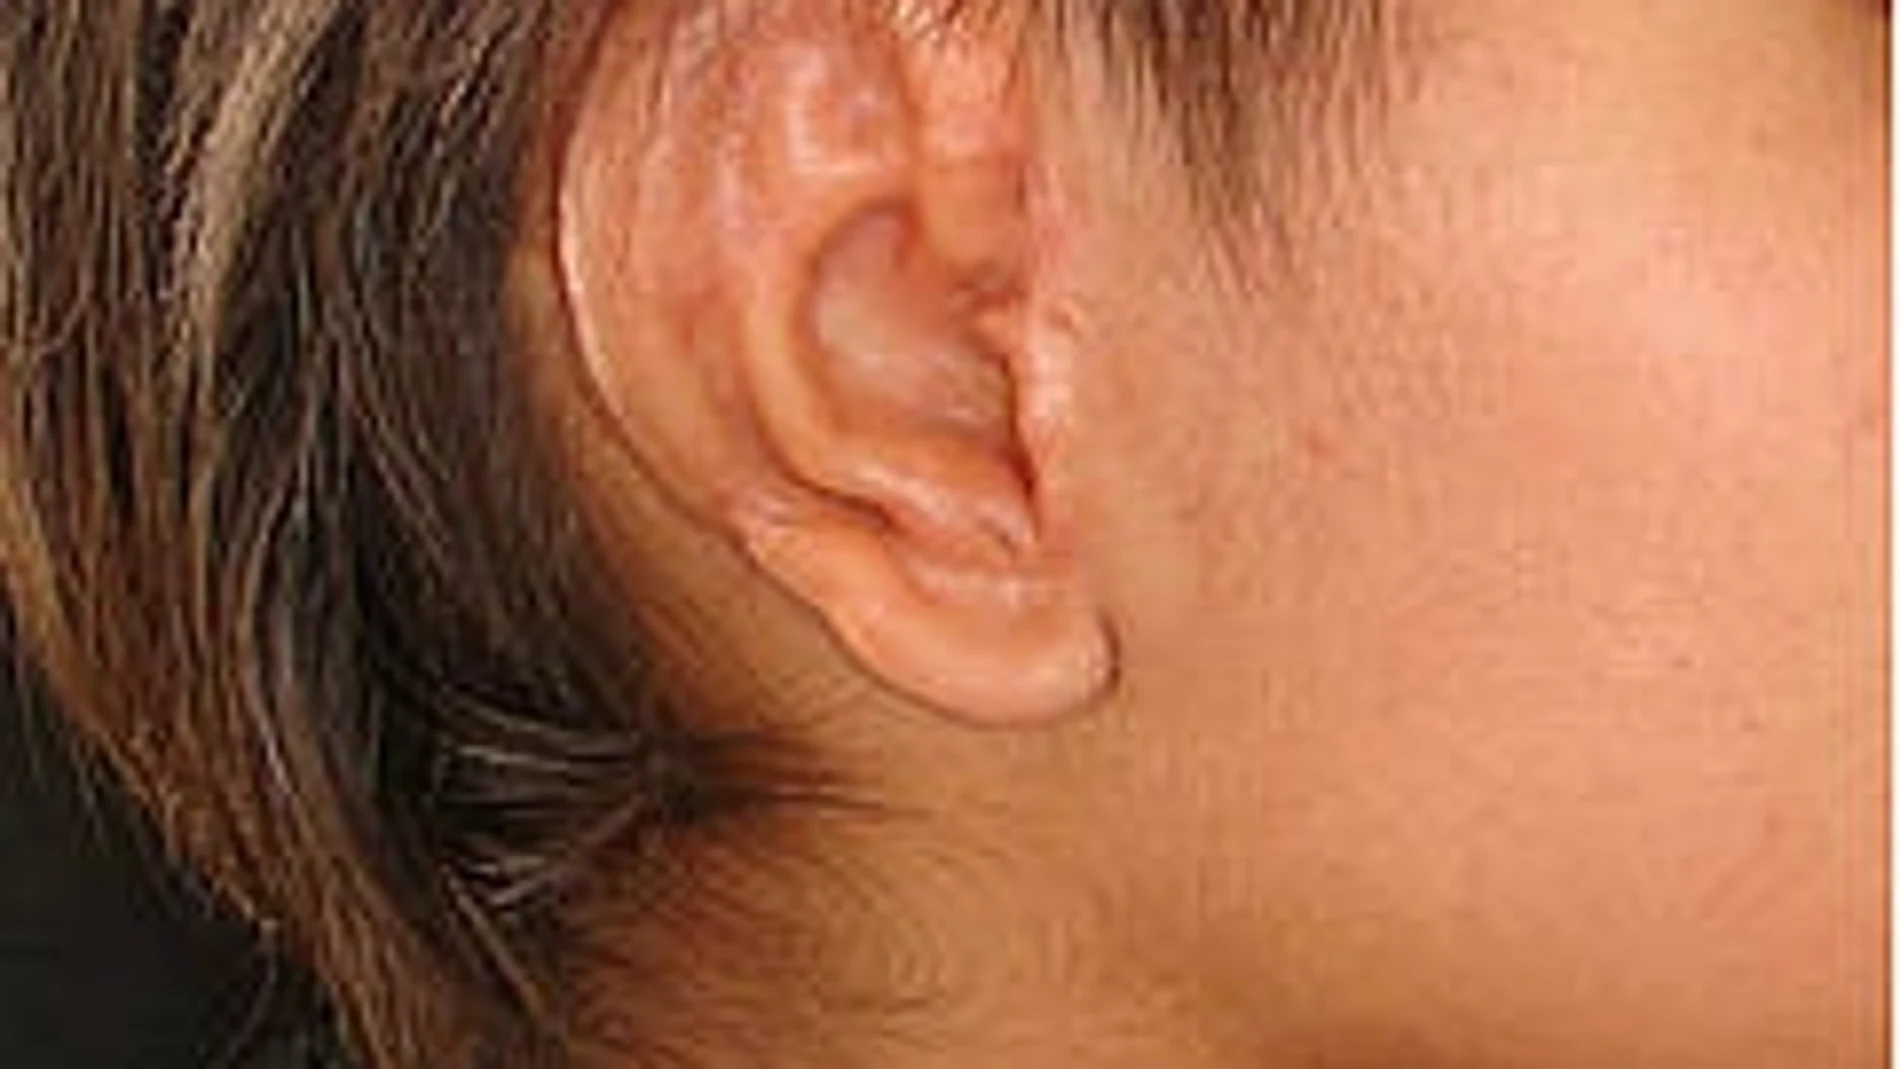 Apariencia de una oreja reconstruida